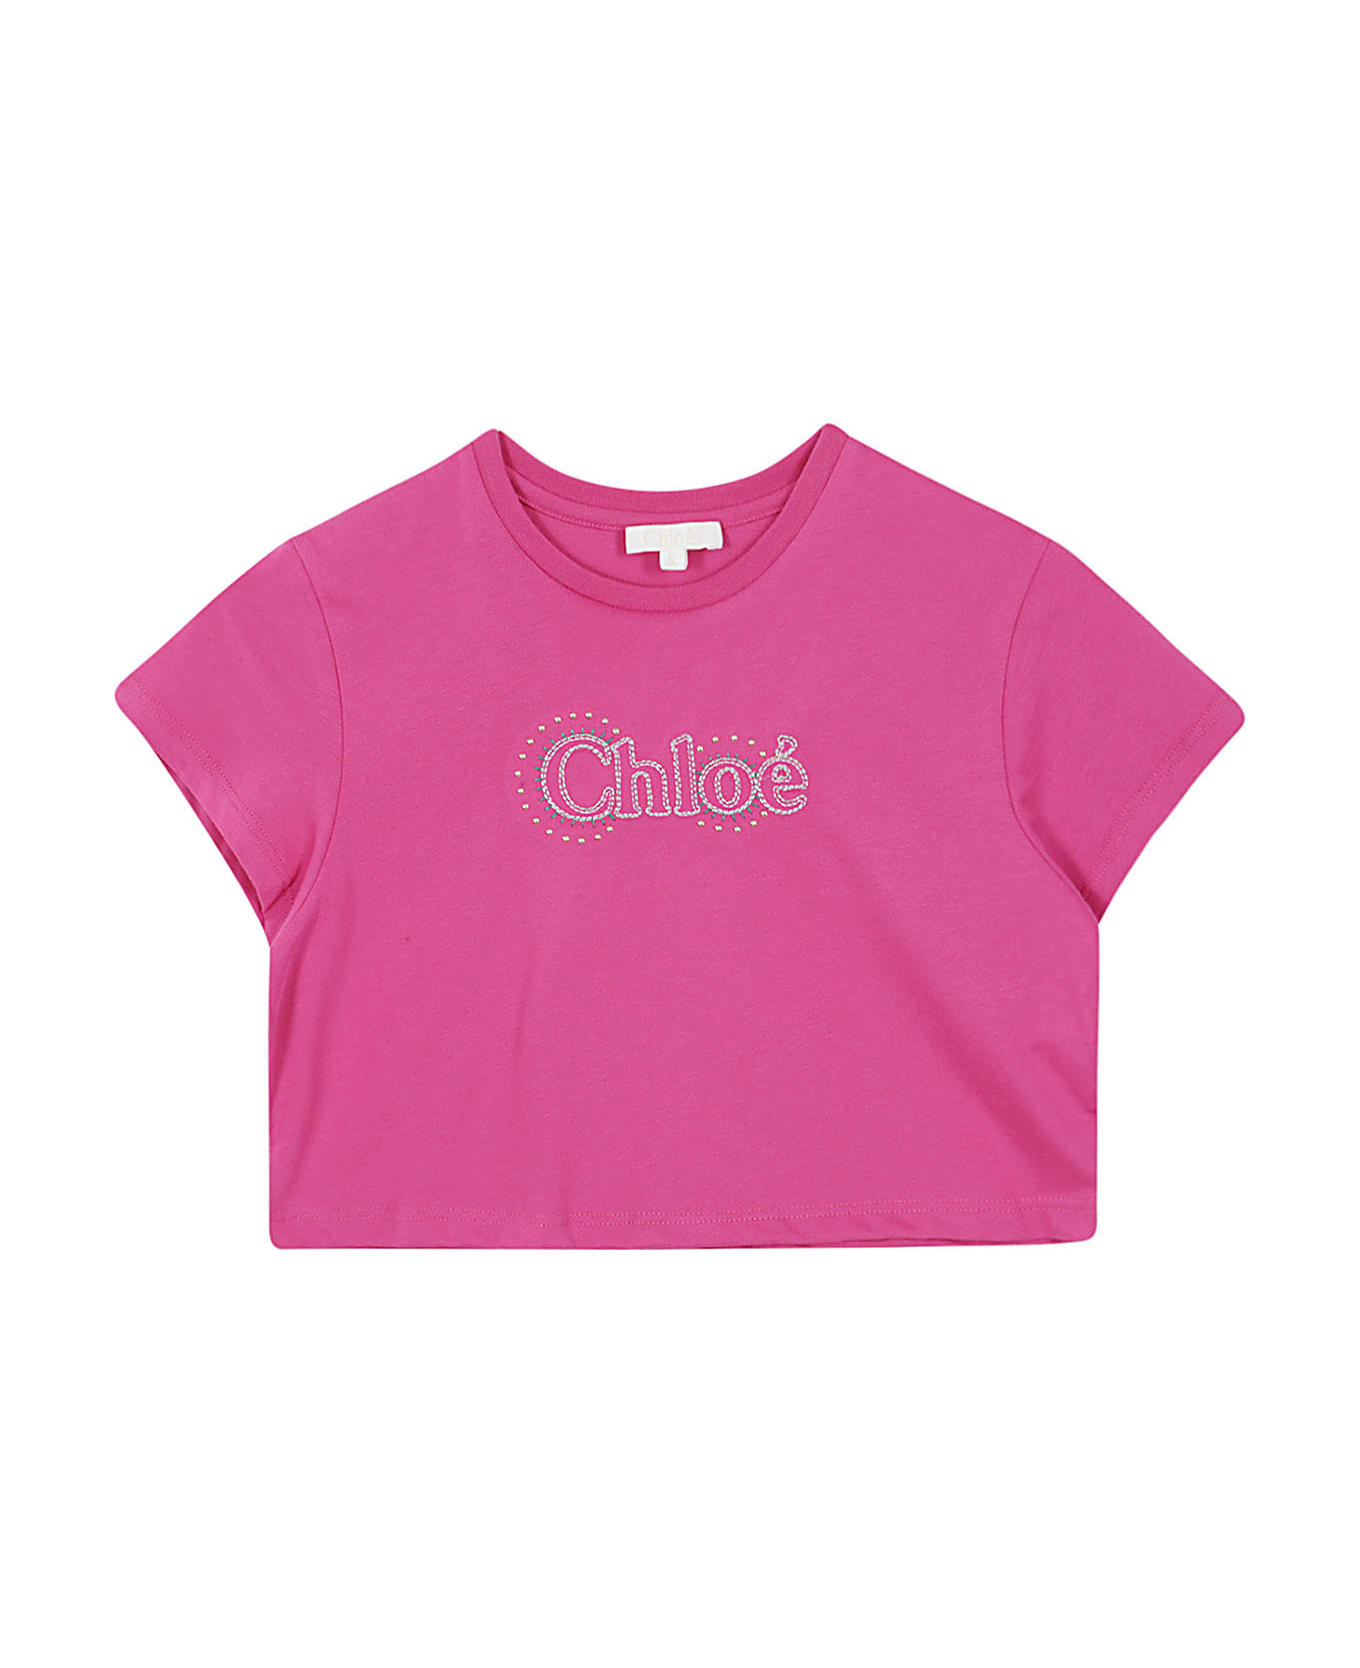 Chloé Tee Shirt - L Rosa